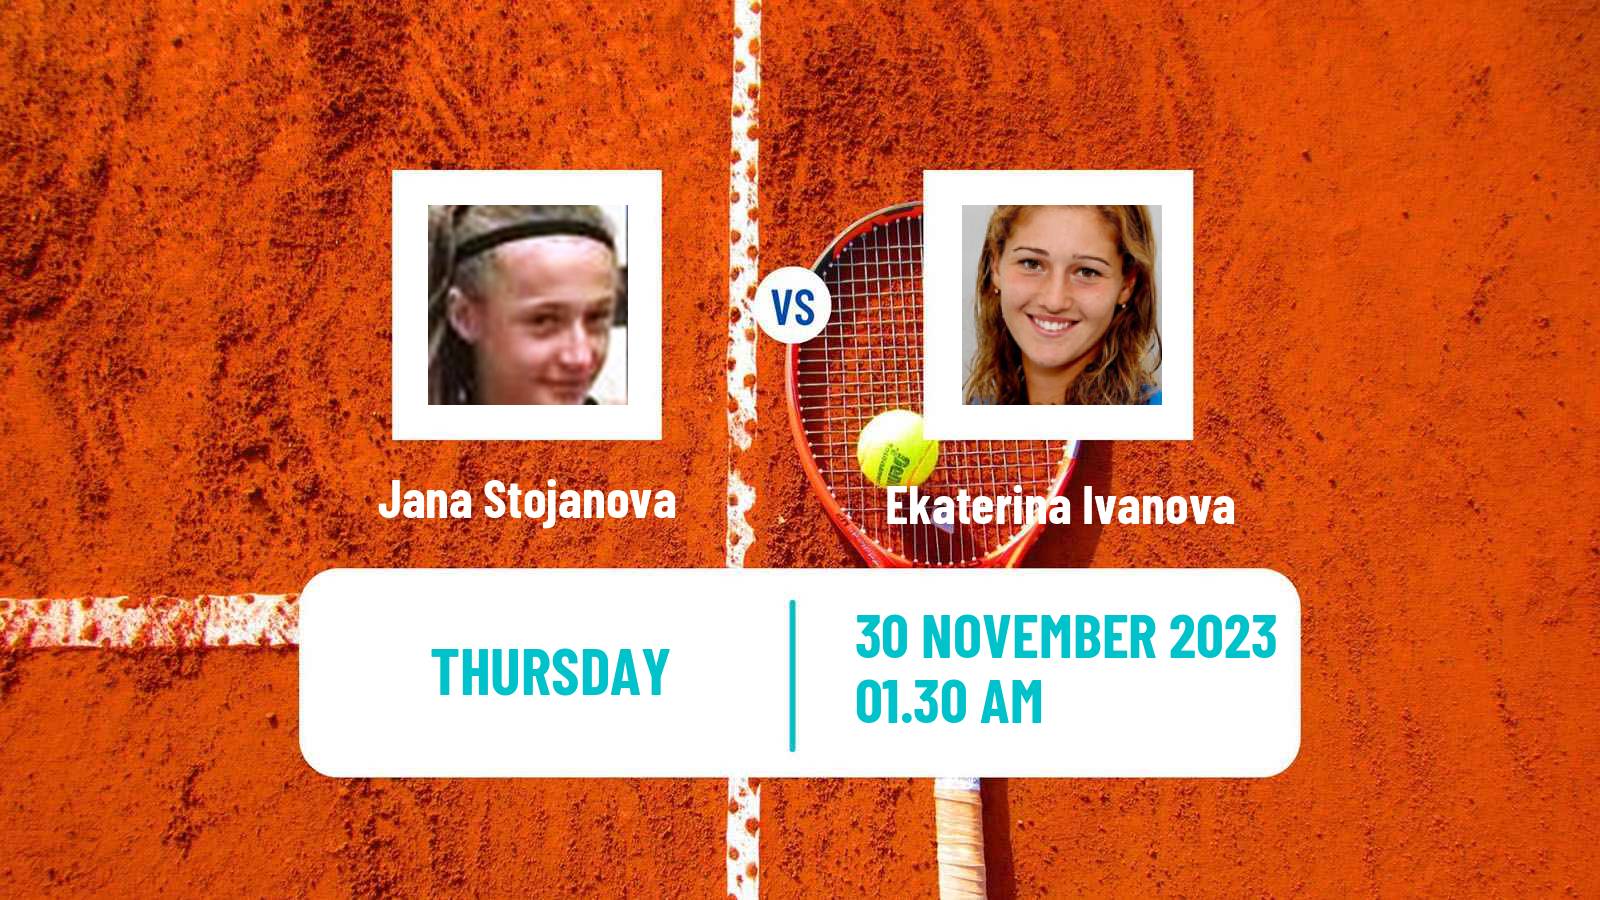 Tennis ITF W15 Antalya 20 Women Jana Stojanova - Ekaterina Ivanova